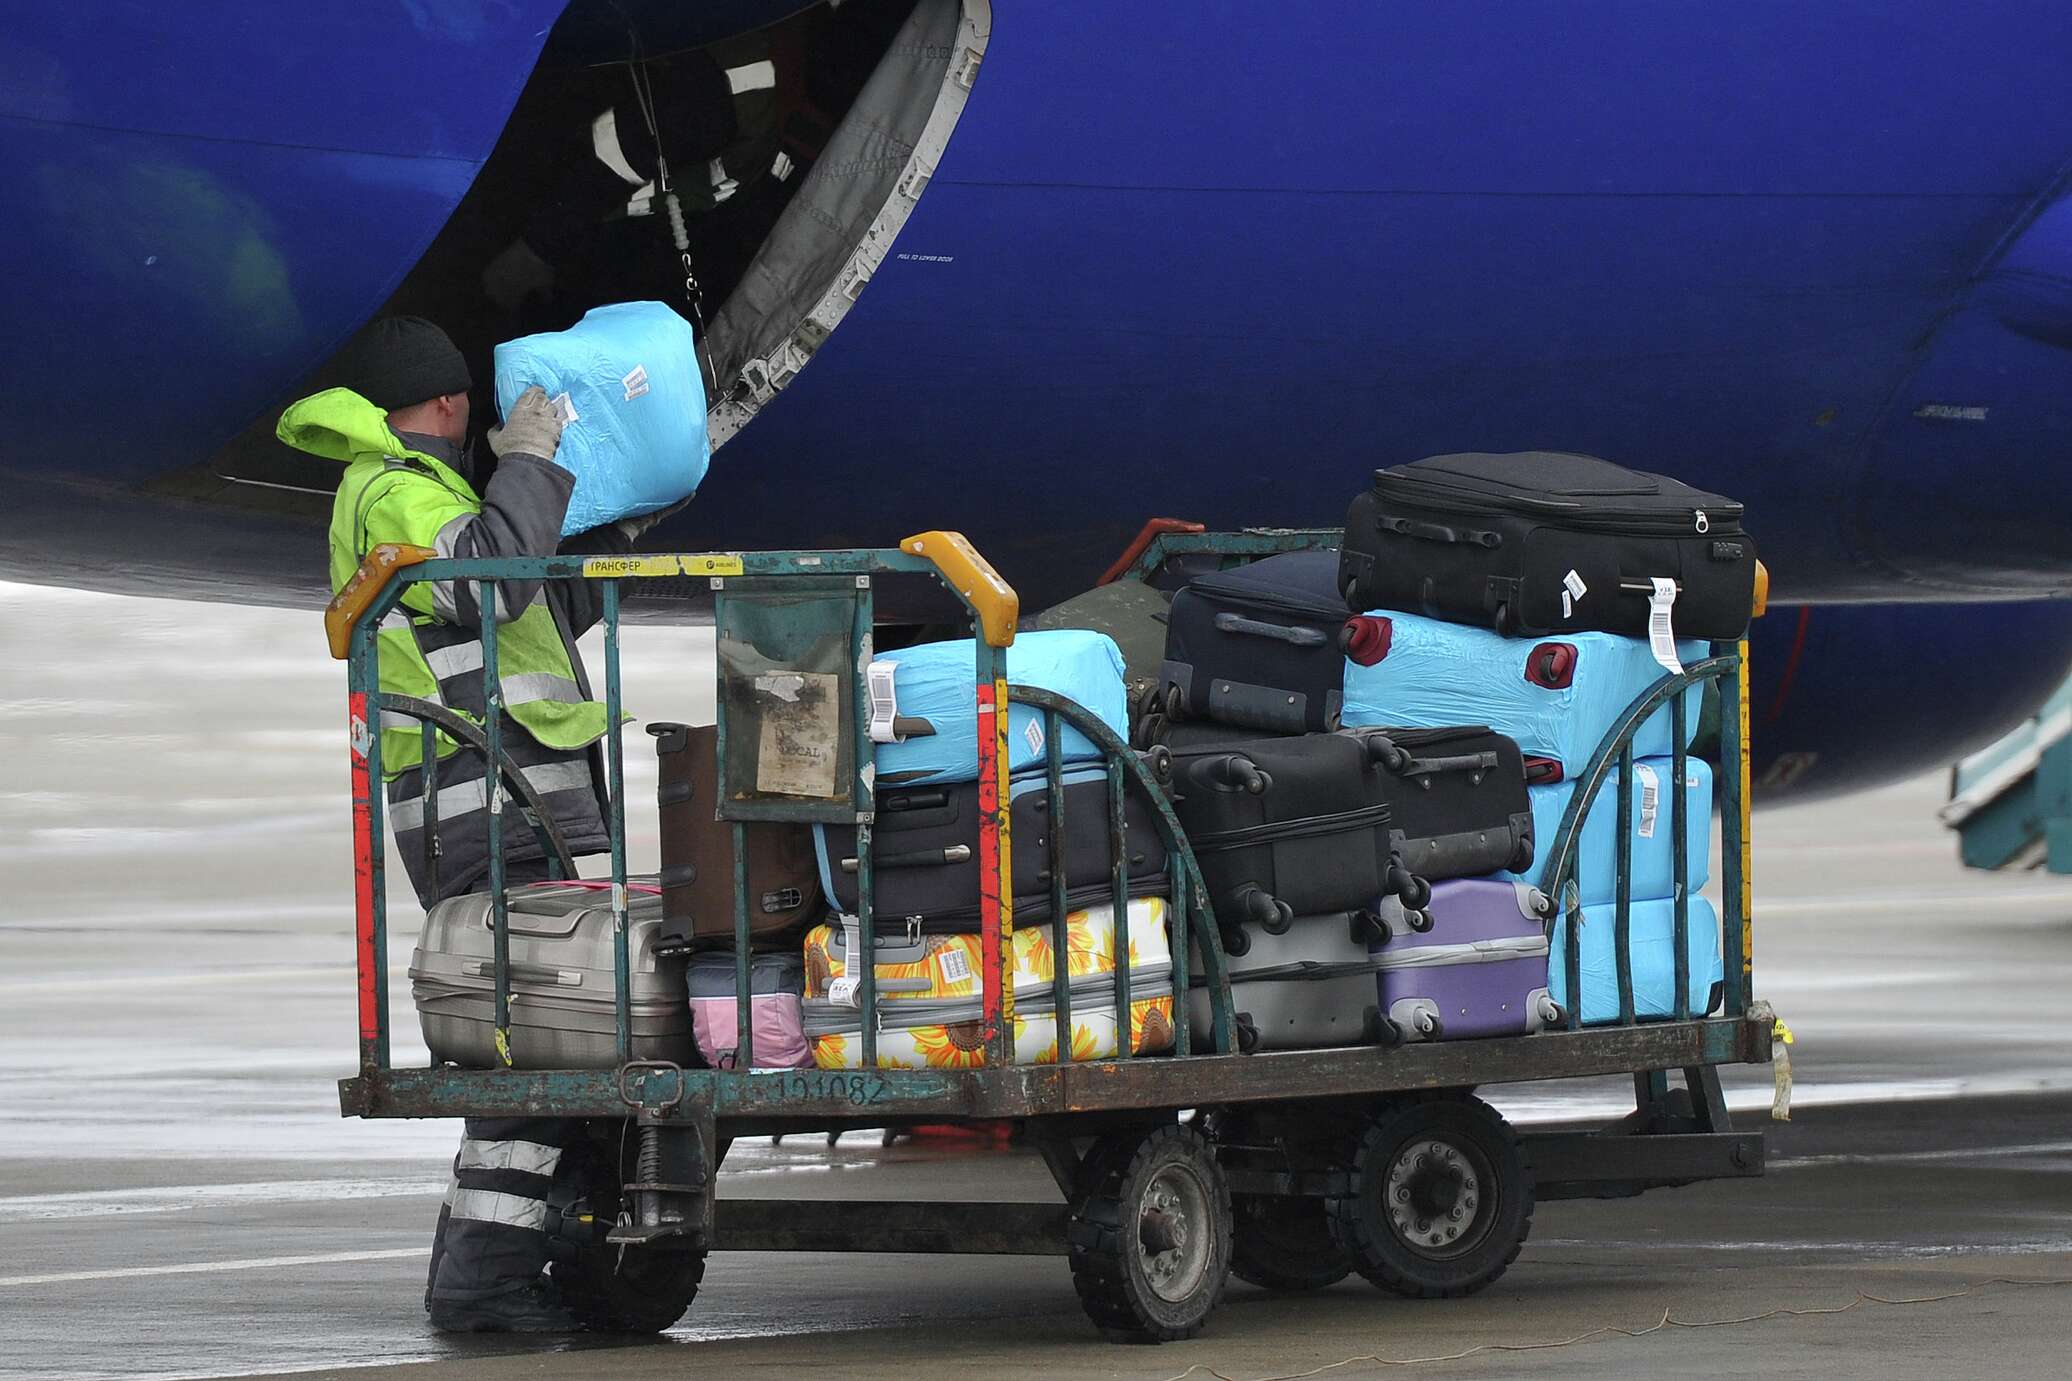 Перевозка багажа воздушным транспортом. Погрузка багажа в самолет. Багажное отделение в аэропорту. Разгрузка багажа самолета. Выгрузка багажа в аэропорту.